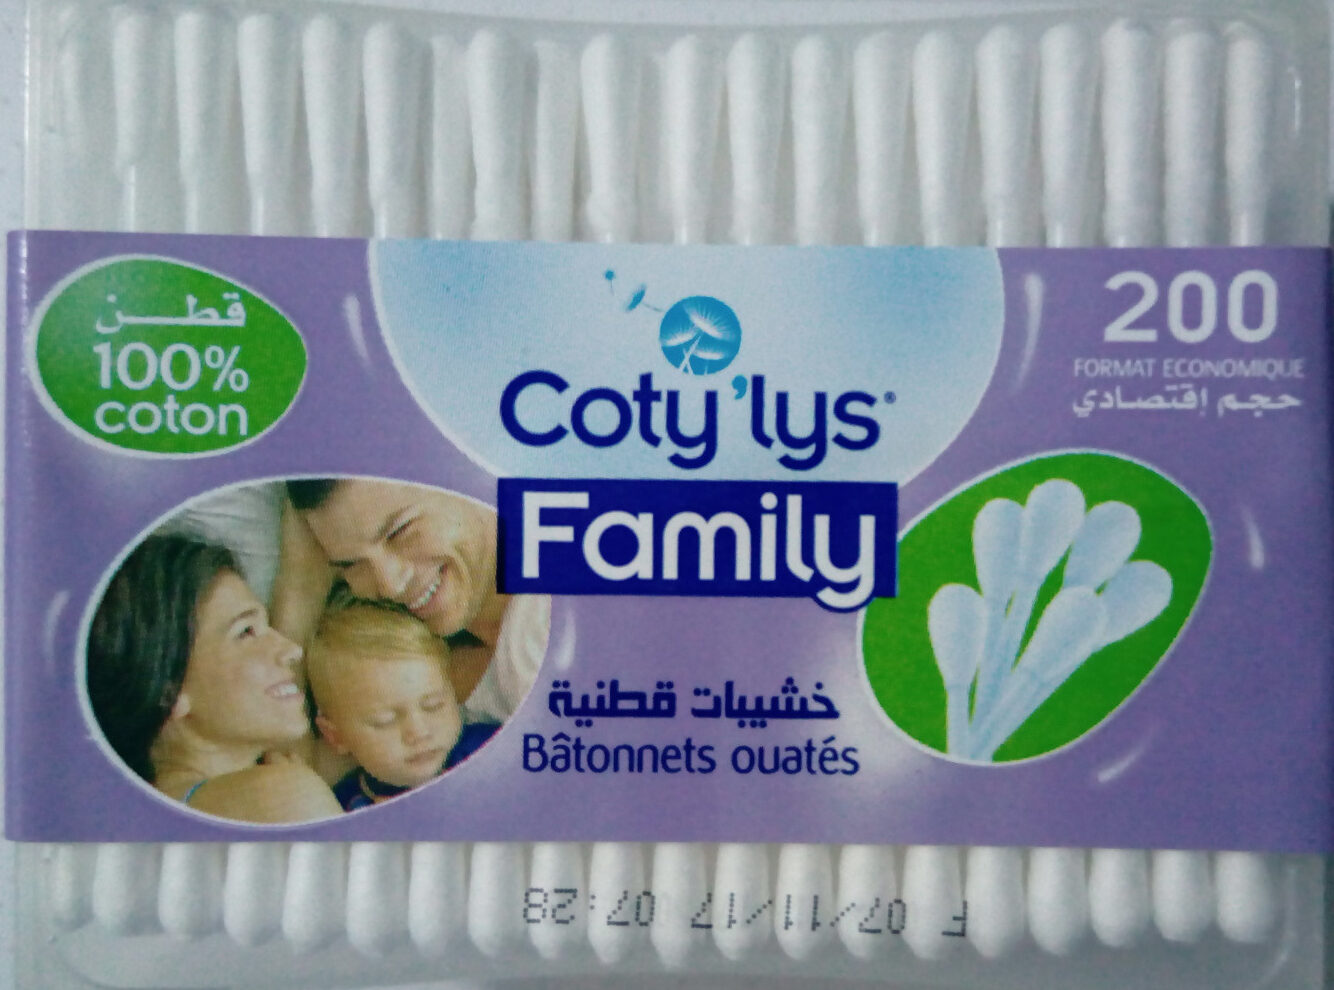 Coty'lys Family batonnets ouatés - Tuote - fr